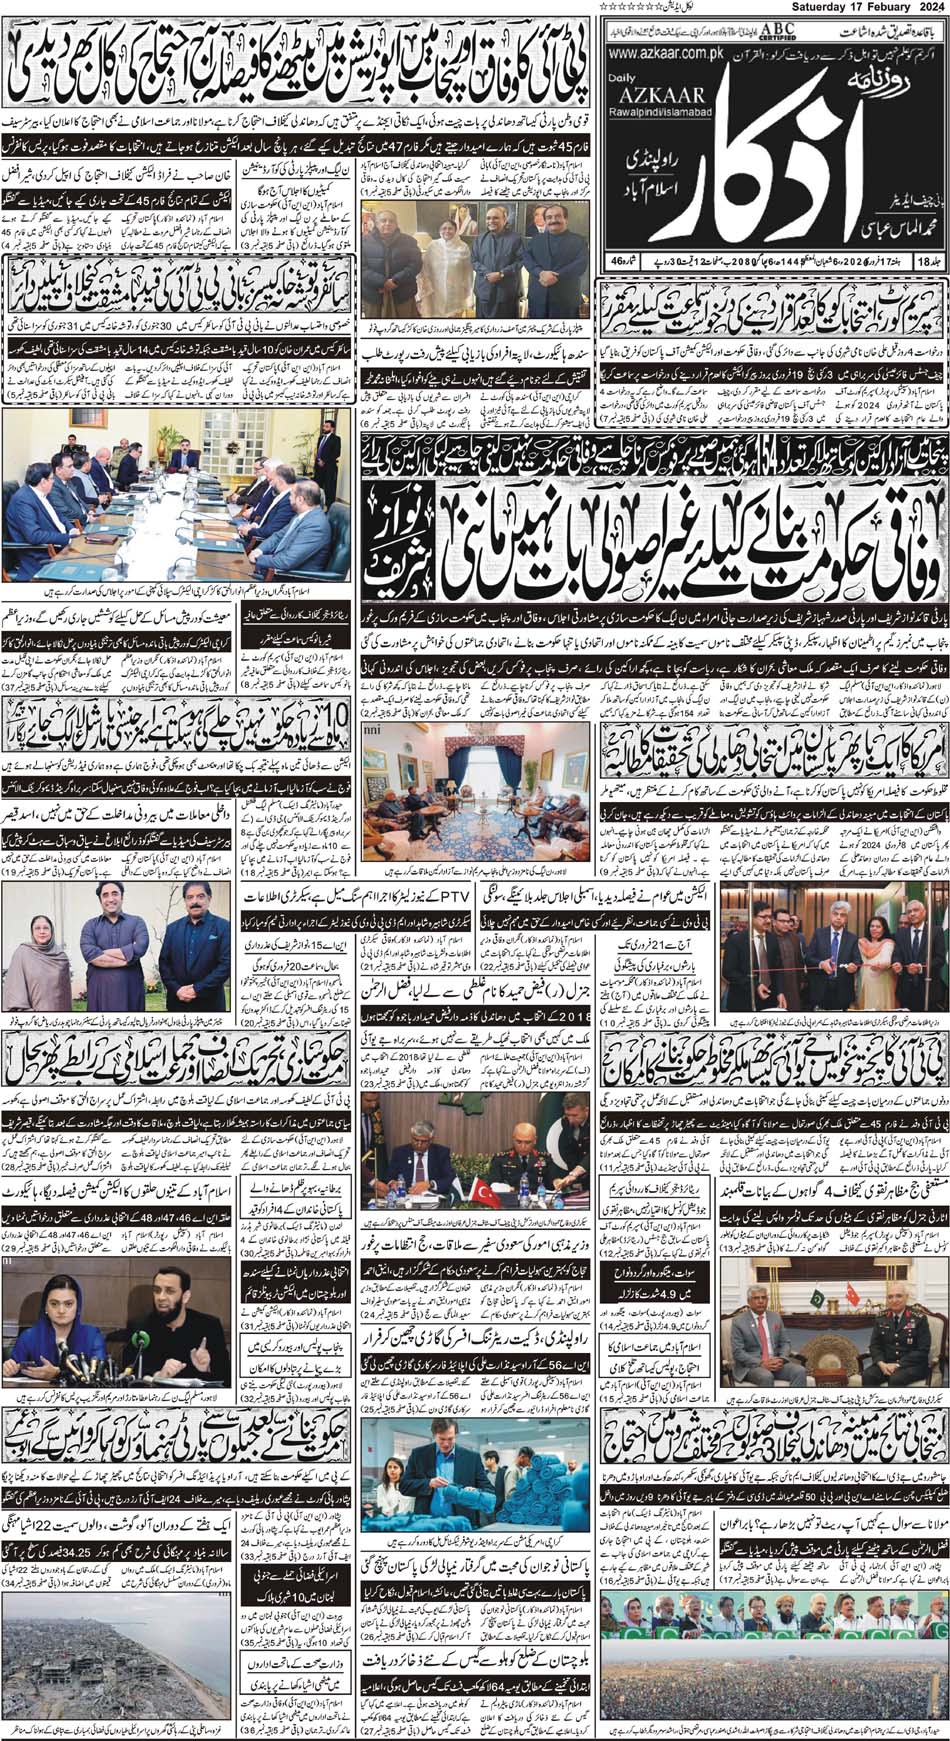 Azkaar Epaper Karachi edition